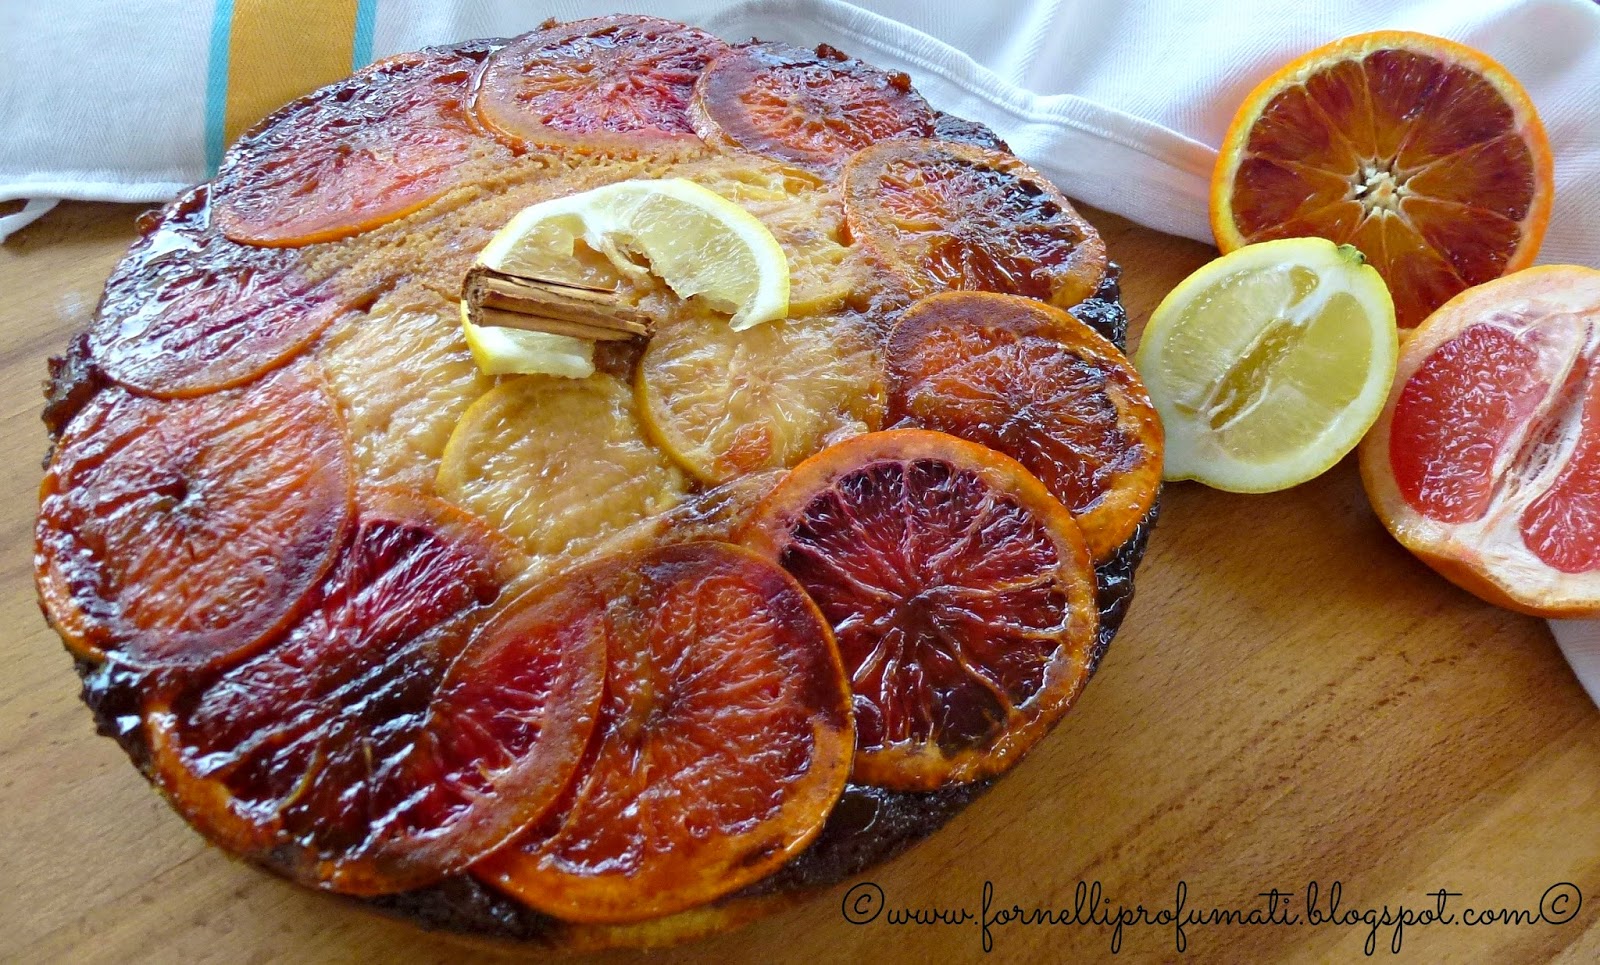 winter citrus upsidedown cake - torta rovesciata agli agrumi con pompelmo rosa, arancia rossa e limone.